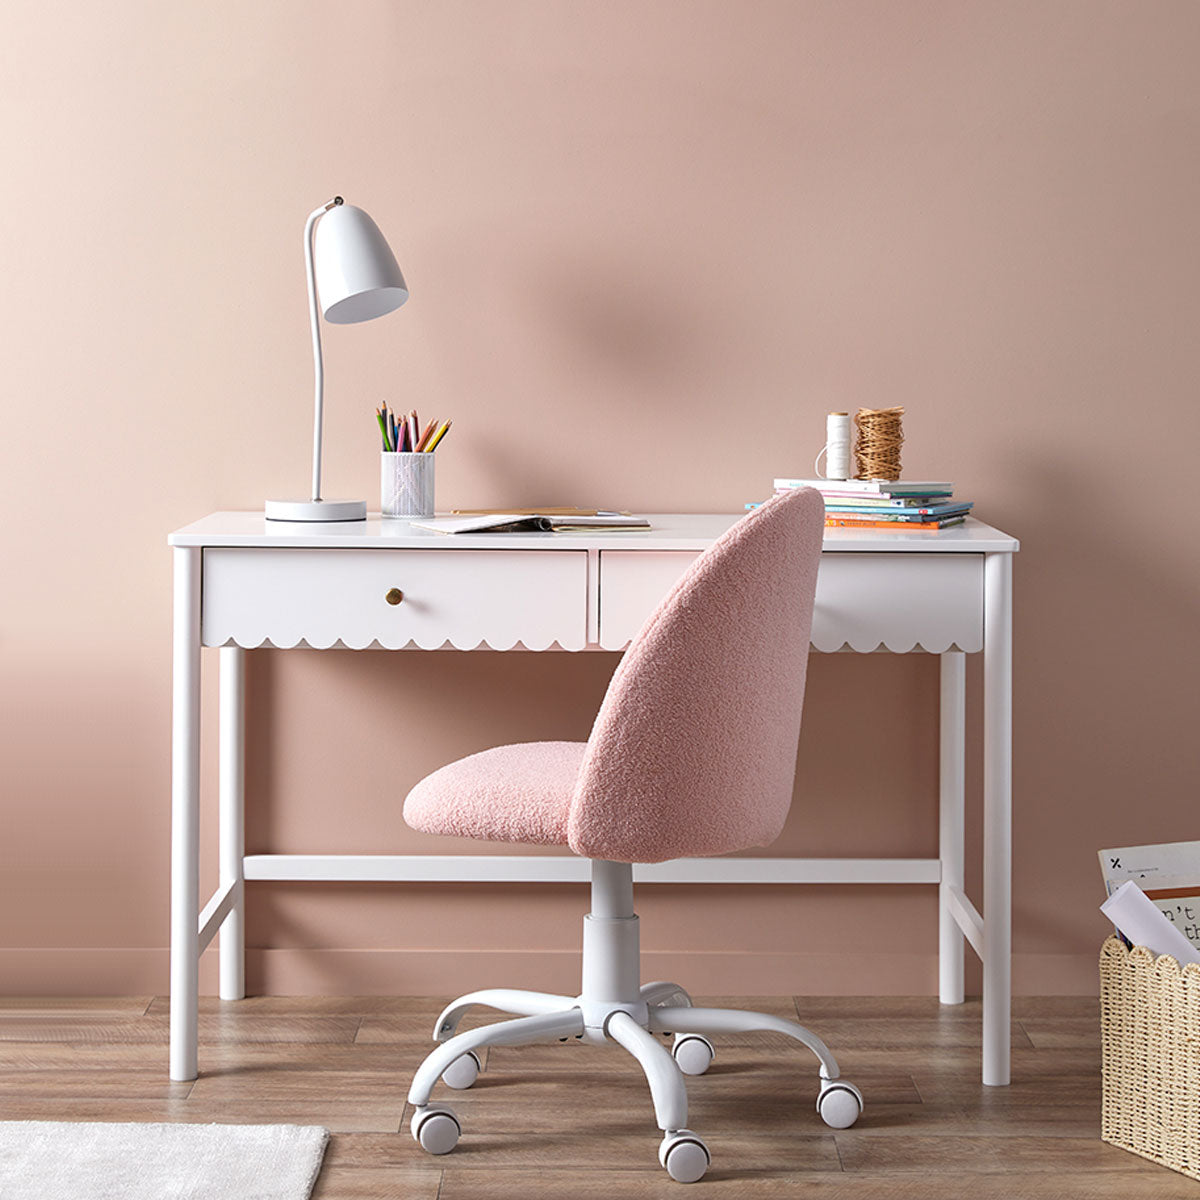 Nolan Office Chair - Pink